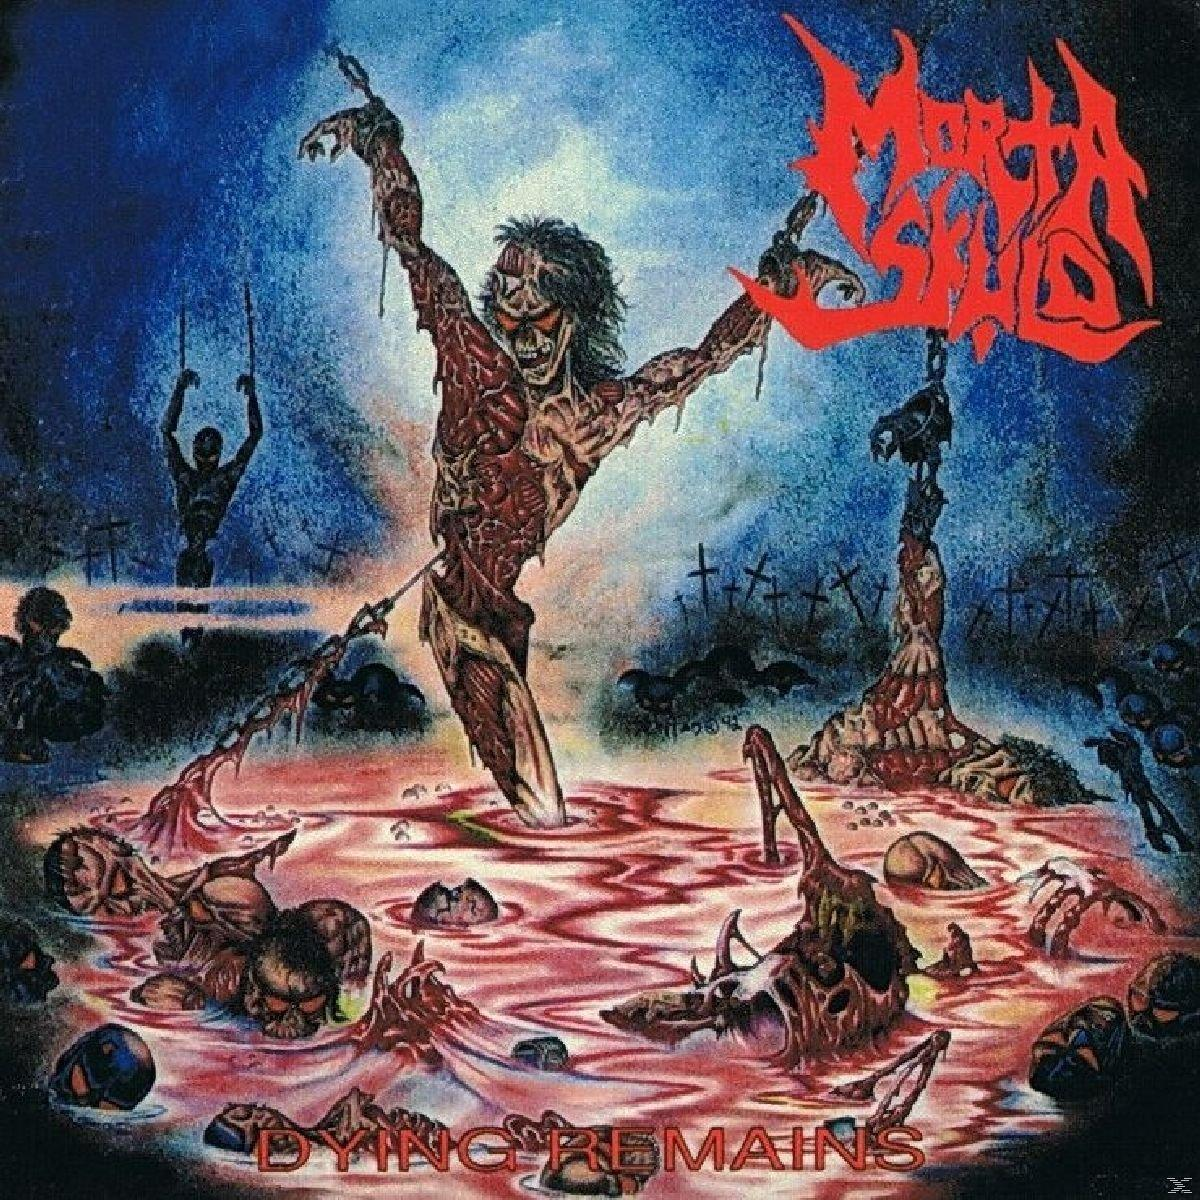 Morta Skuld - Dying - (Vinyl) Remains